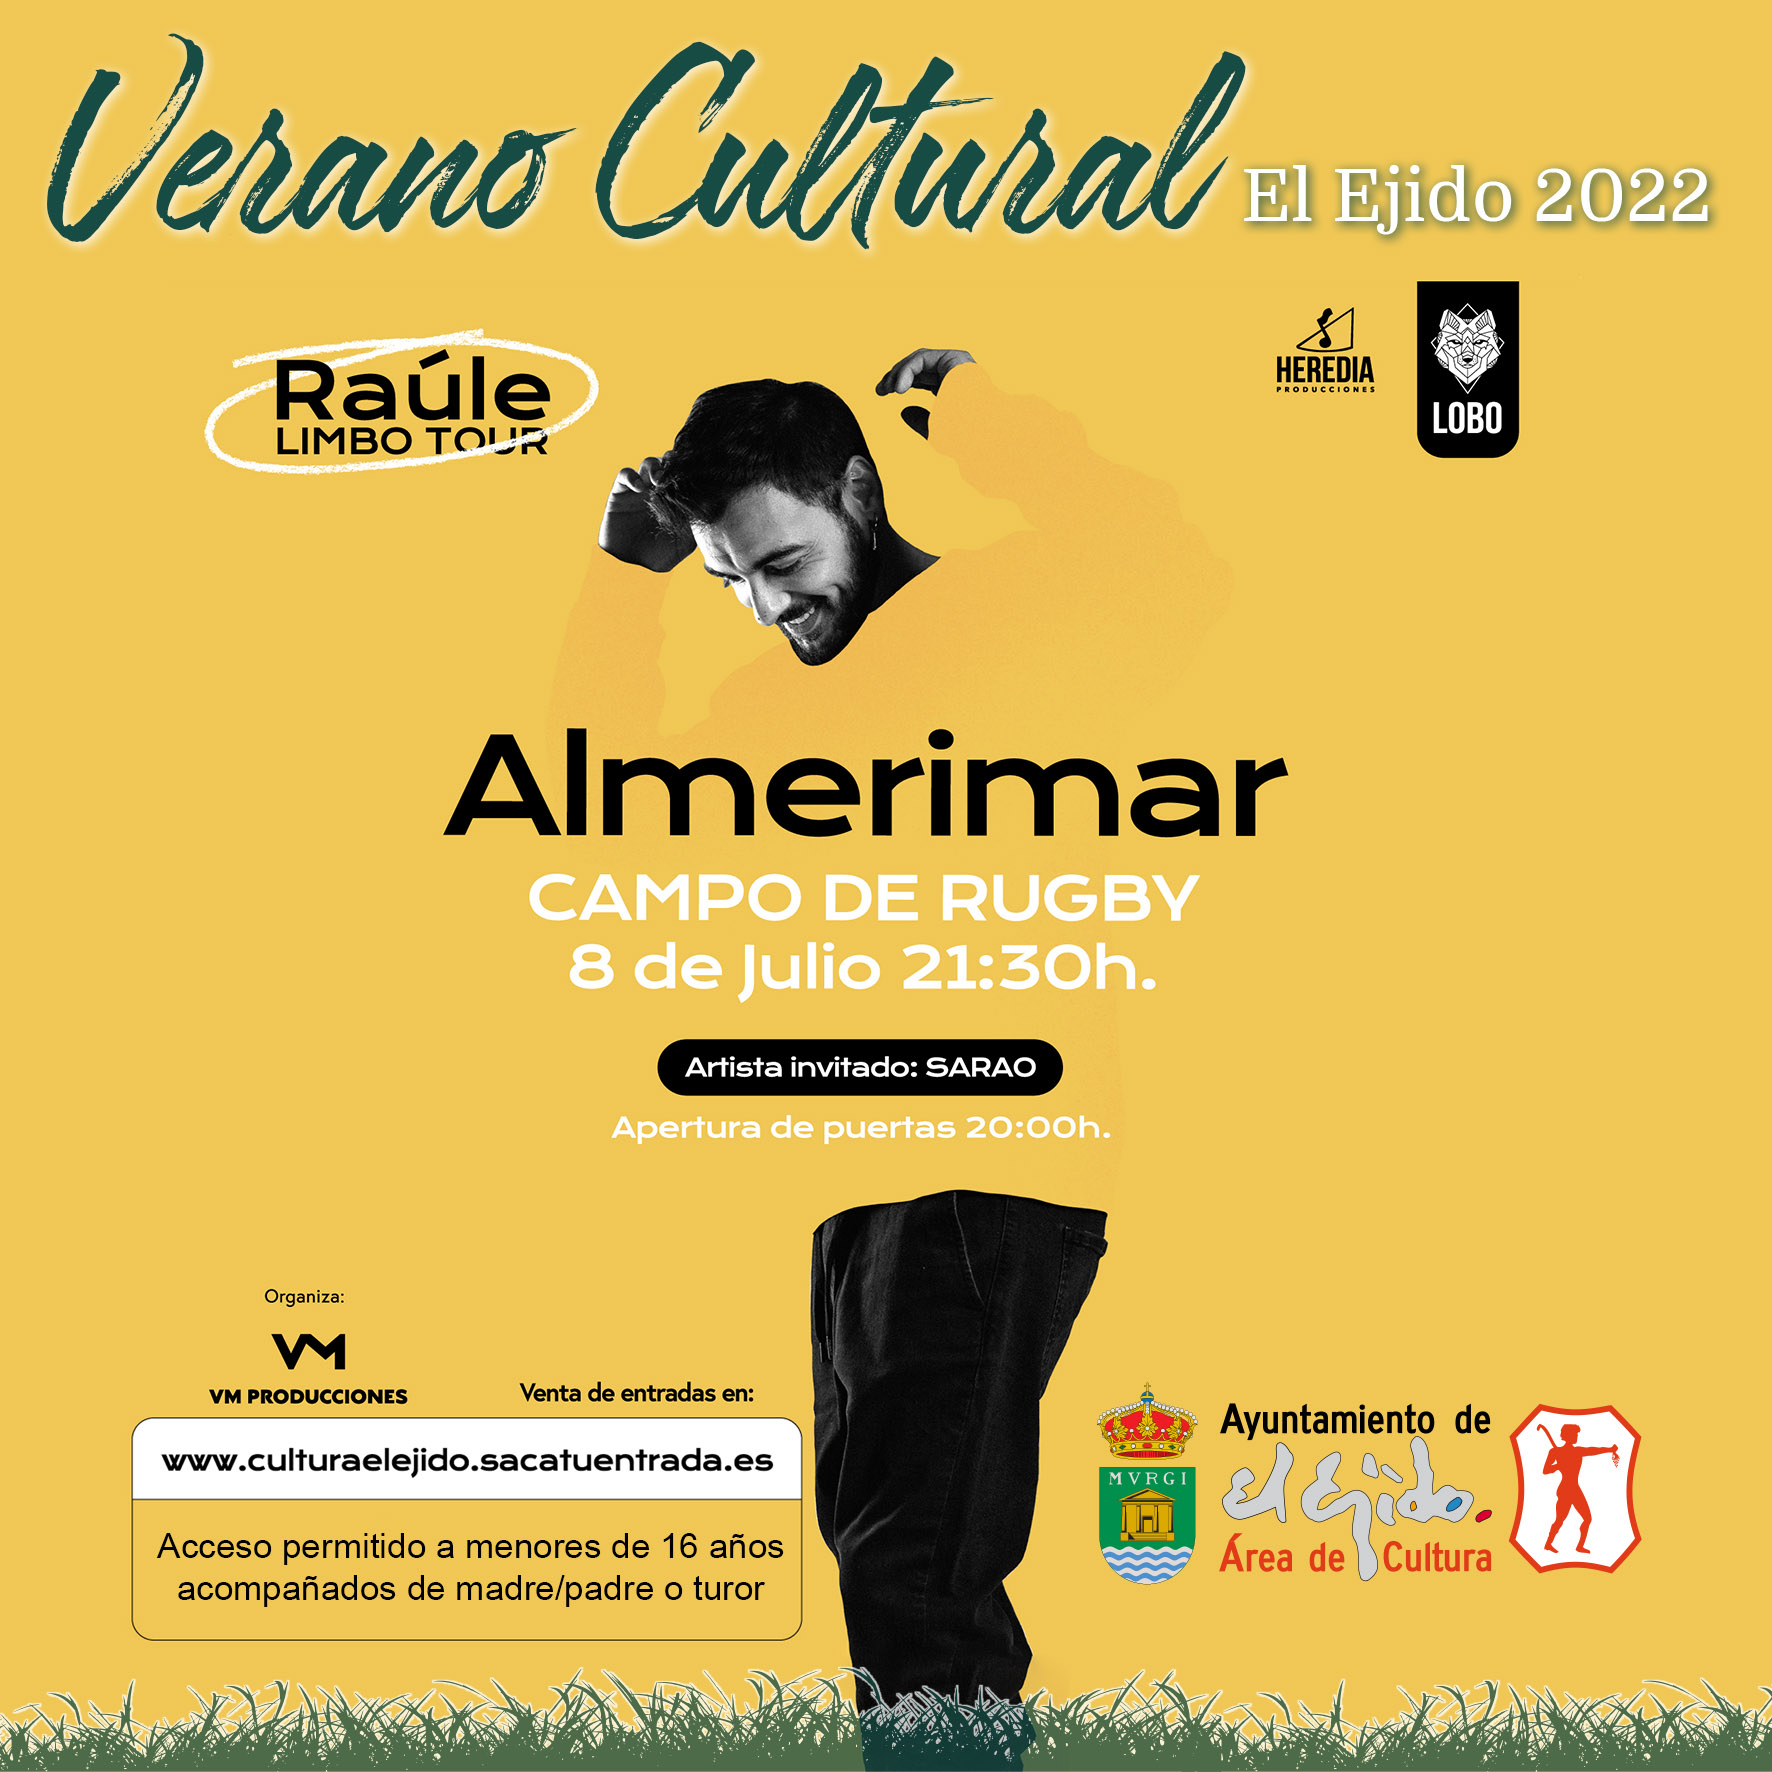 Avance de programación del Verano Cultural 2022 de El Ejido – Raúle «Limbo tour»